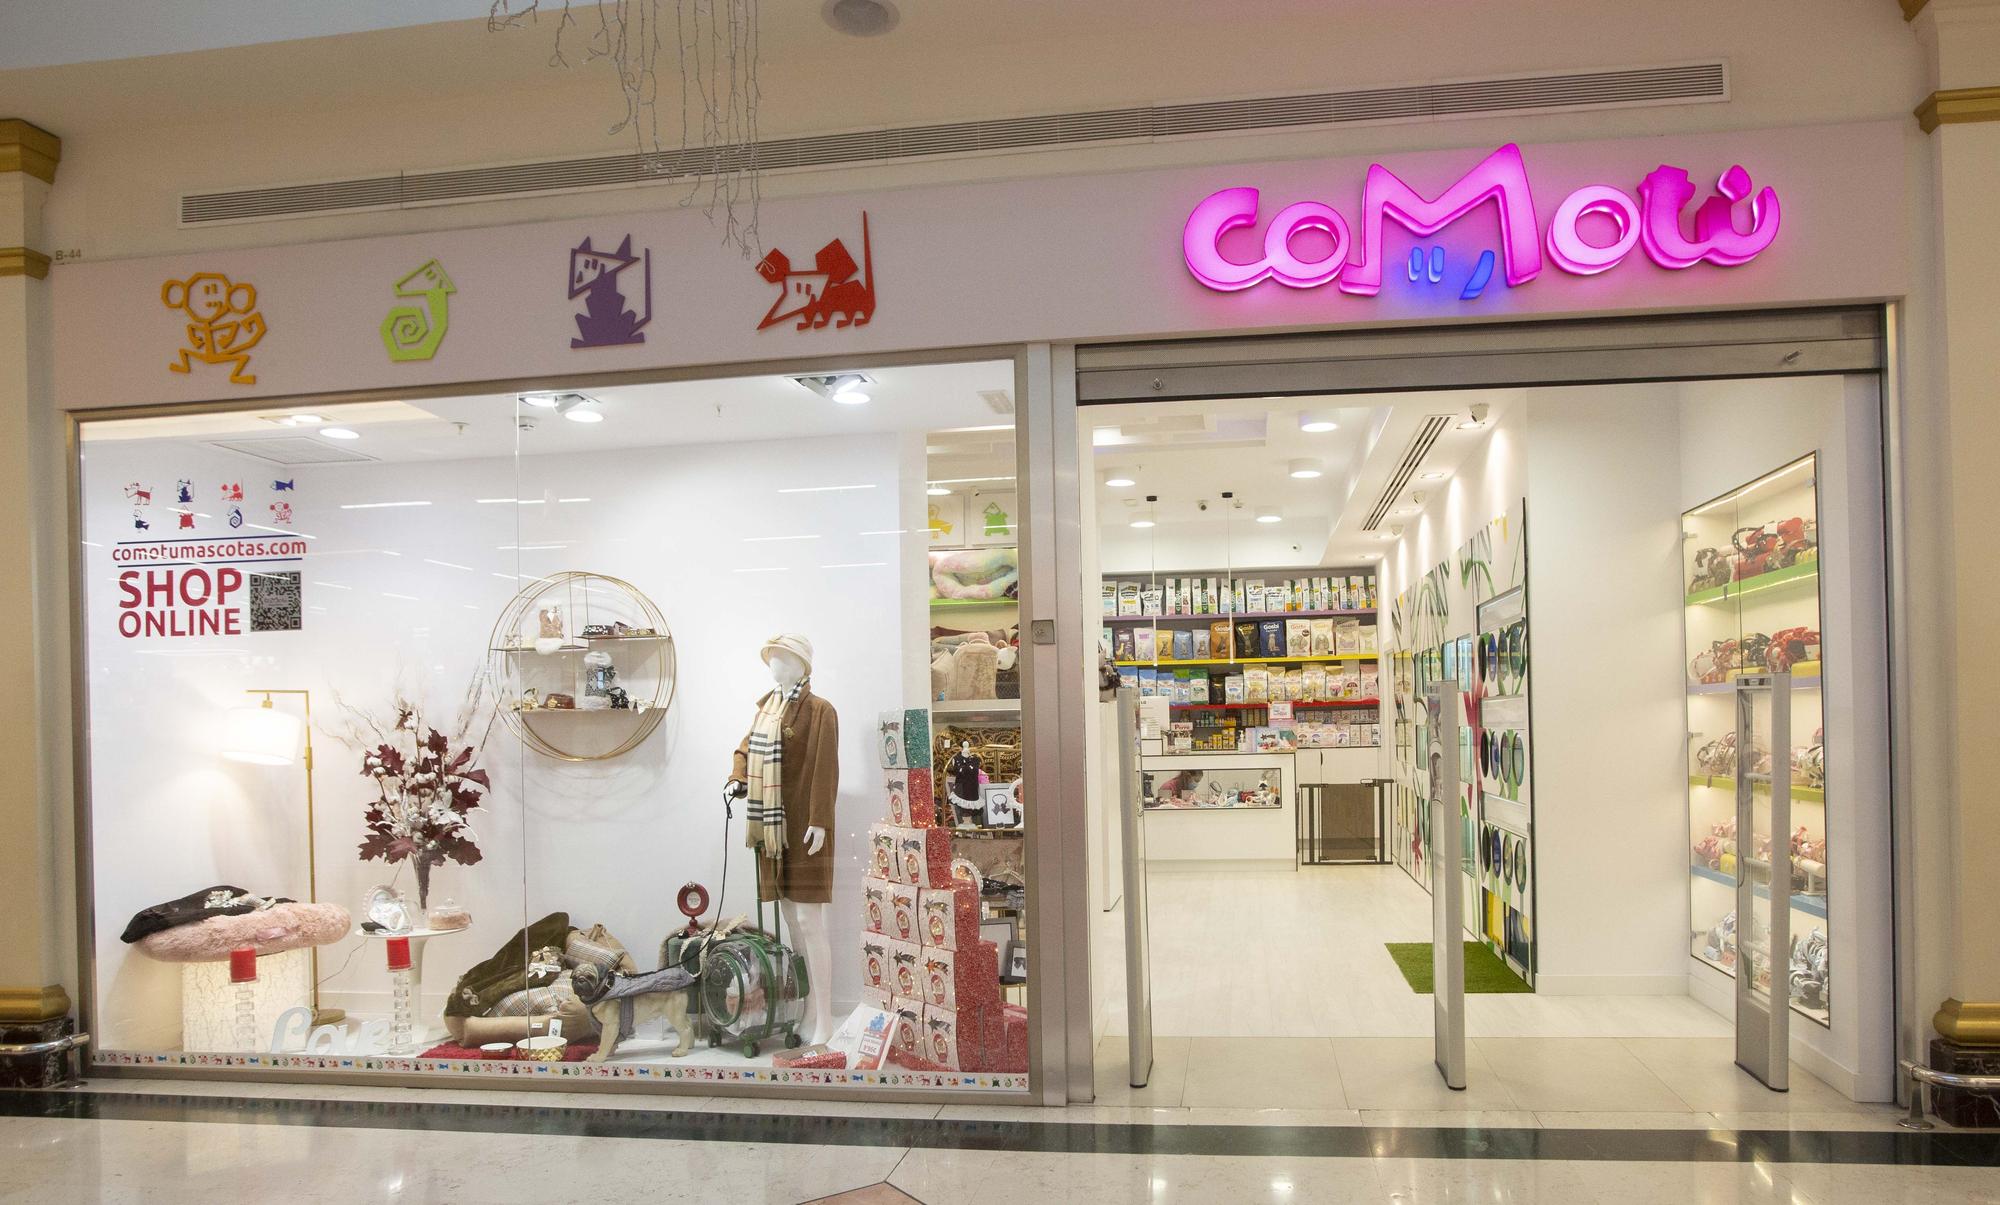 La tienda de ComoTú Mascotas en Centro Comercial Plaza Mar 2 ha sido totalmente reformada.